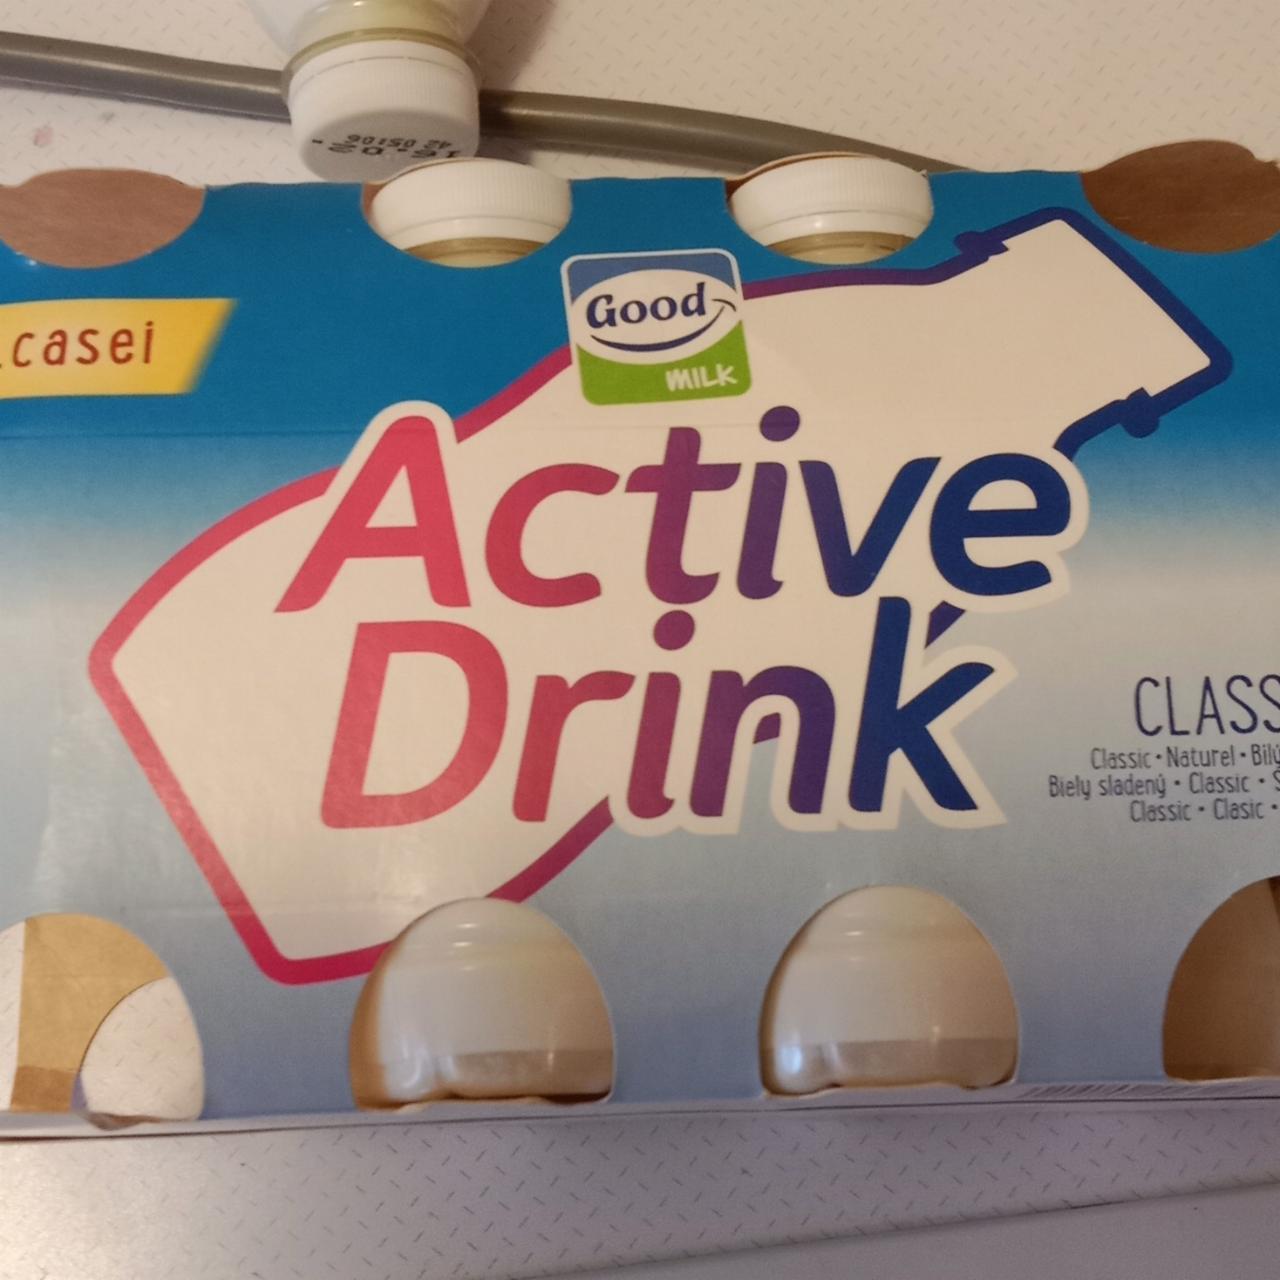 Képek - Active Drink Classic sovány joghurtital édesítőszerekkel Good Milk